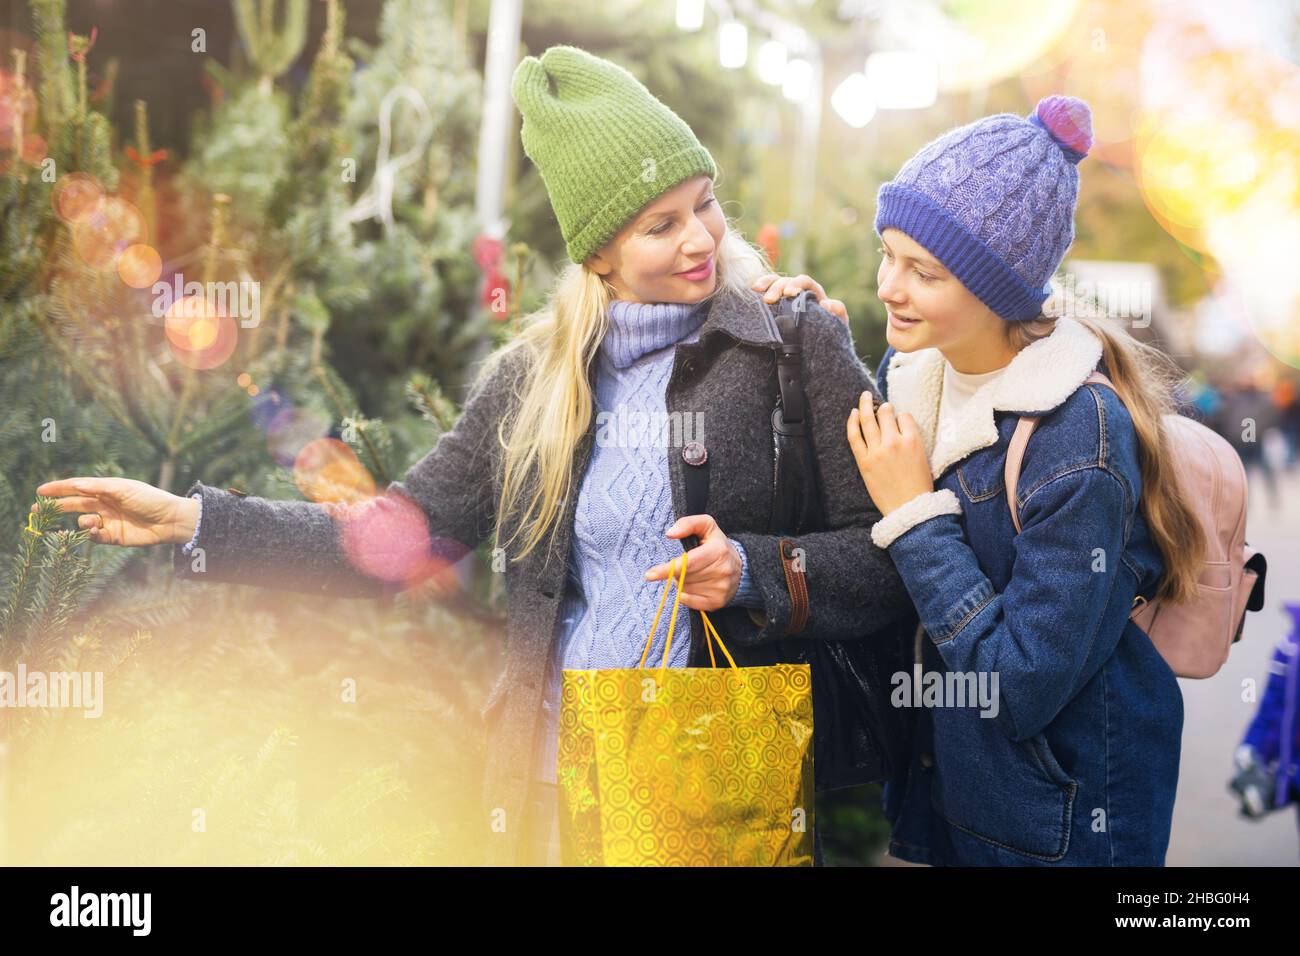 Madre e figlia adolescente che sceglie l'albero di Natale alla fiera di Natale Foto Stock